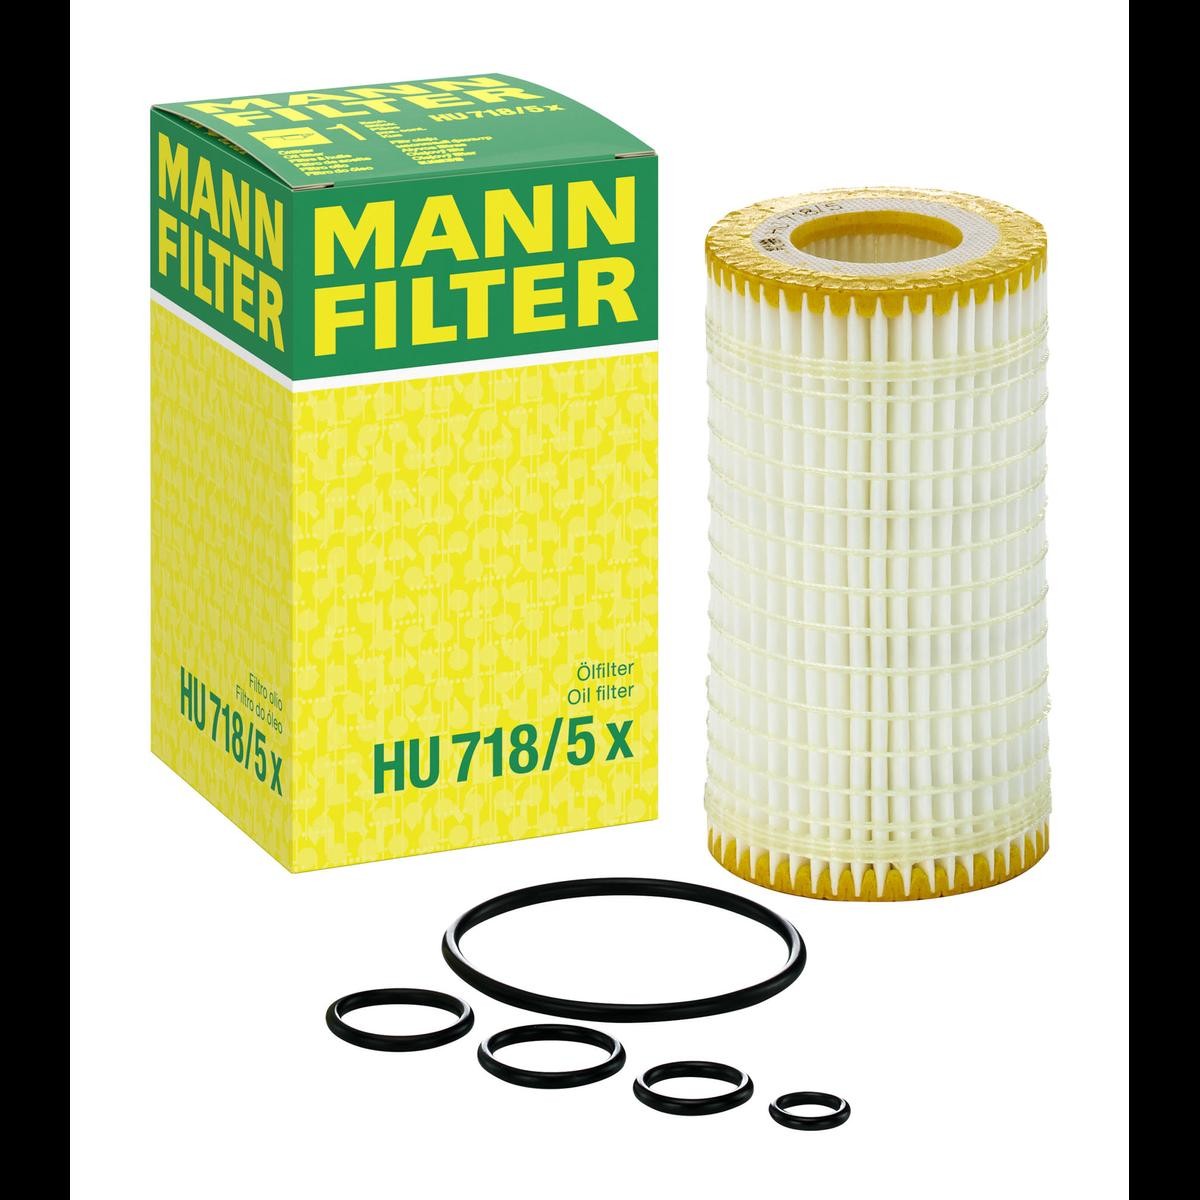 HU7185x Filtro olio motore MANN-FILTER HU 718/5 x - Prezzo ridotto